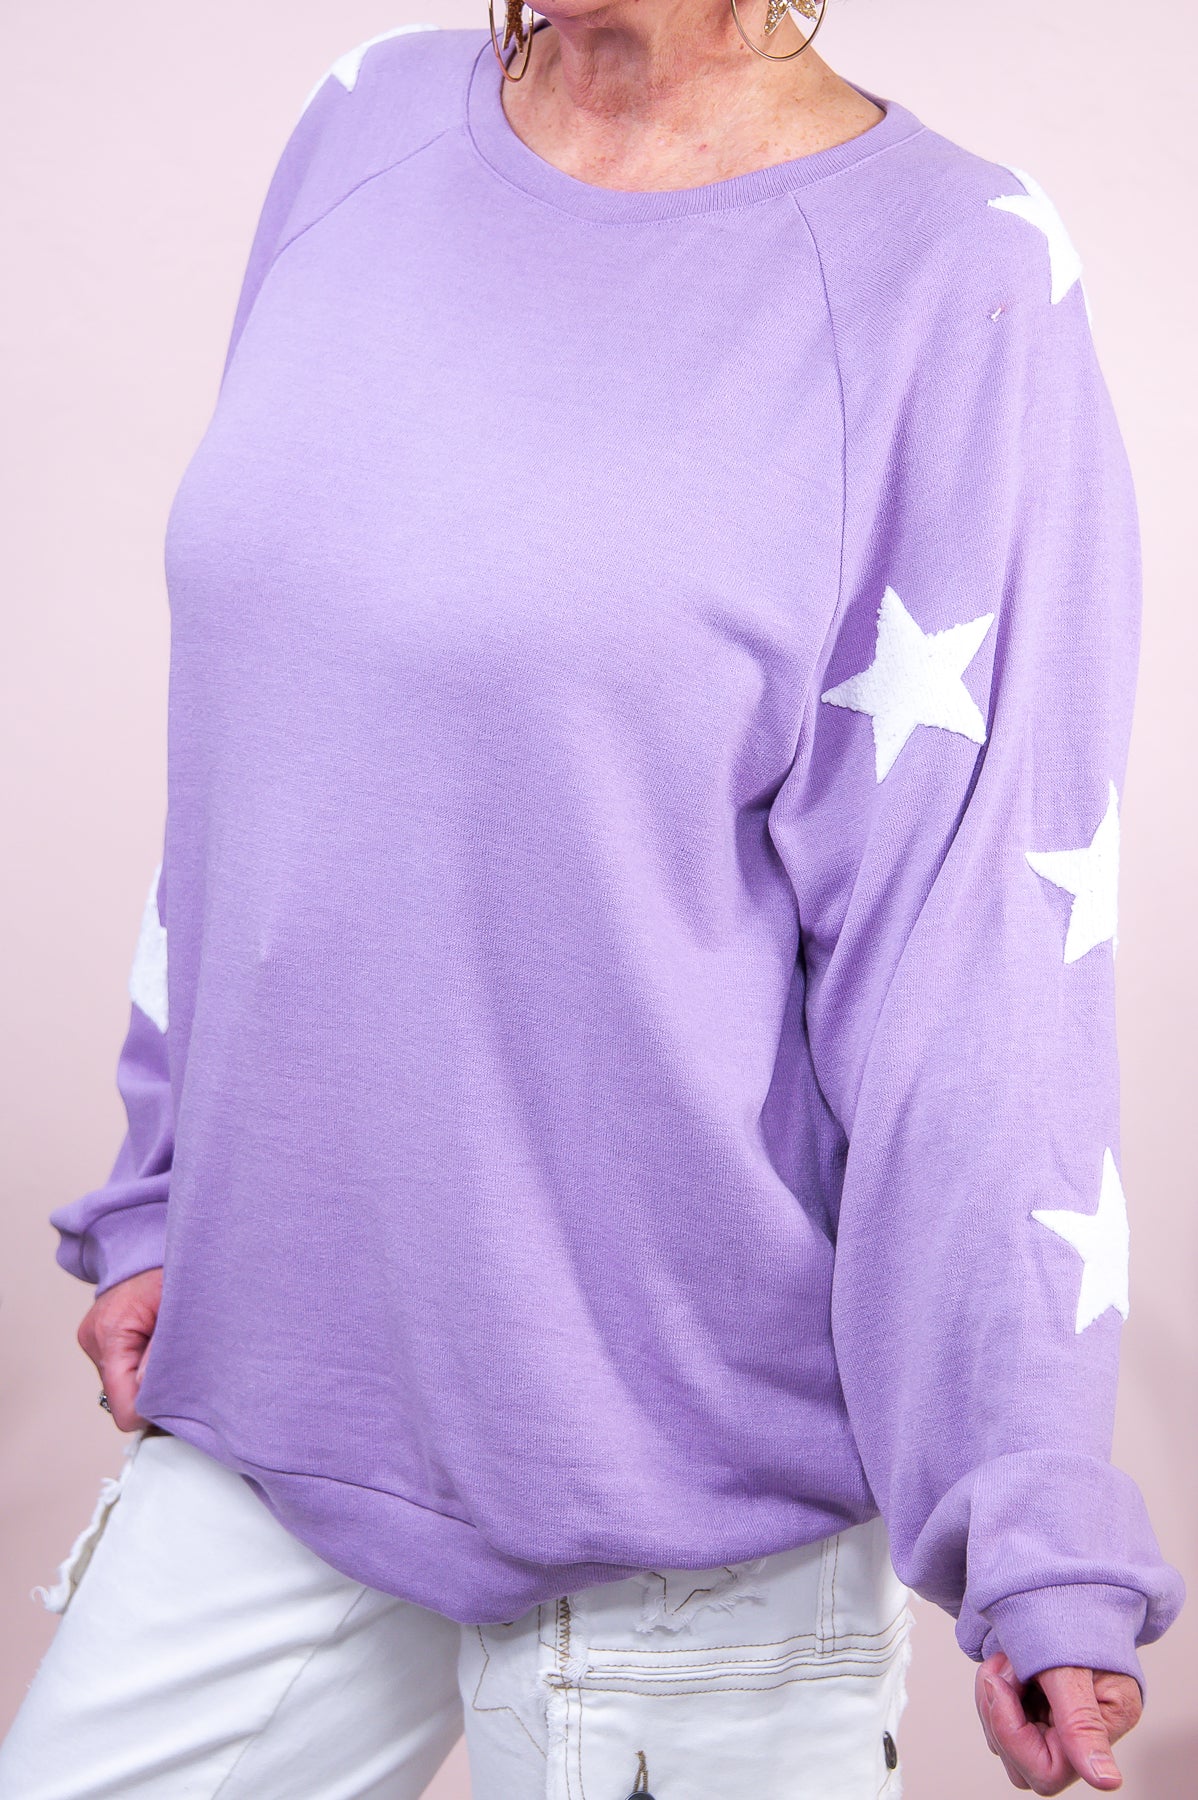 I'm Star Struck Lilac Star Printed Top - T8813LI